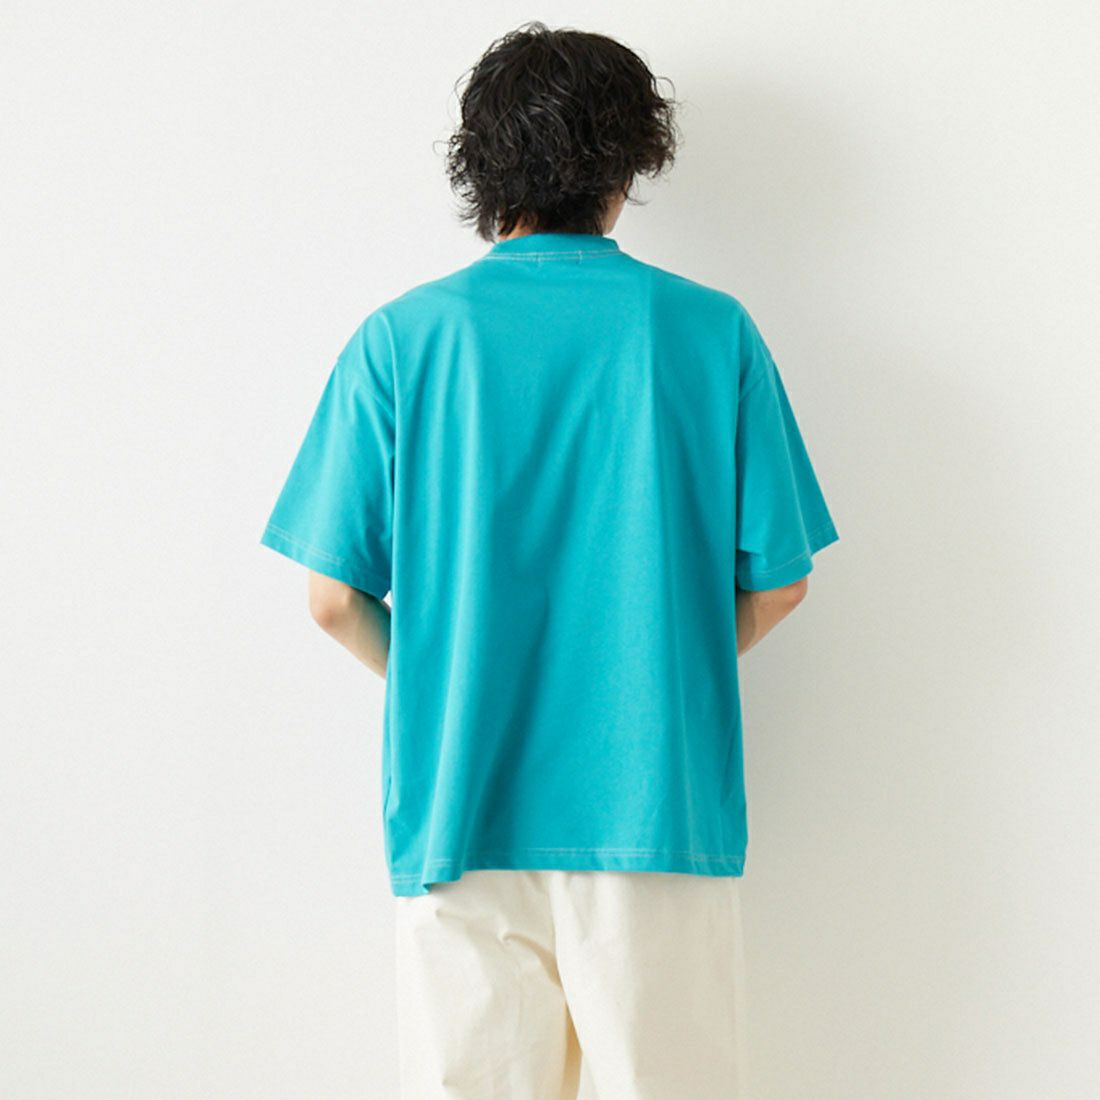 L.L.BEAN [エルエルビーン] バックパックポケットTシャツ [3275-2025] 別注 ダブルプリント ショートスリーブTシャツ [UST-22120IN-JF] 41 TEAL &&モデル身長：183cm 着用サイズ：L&&